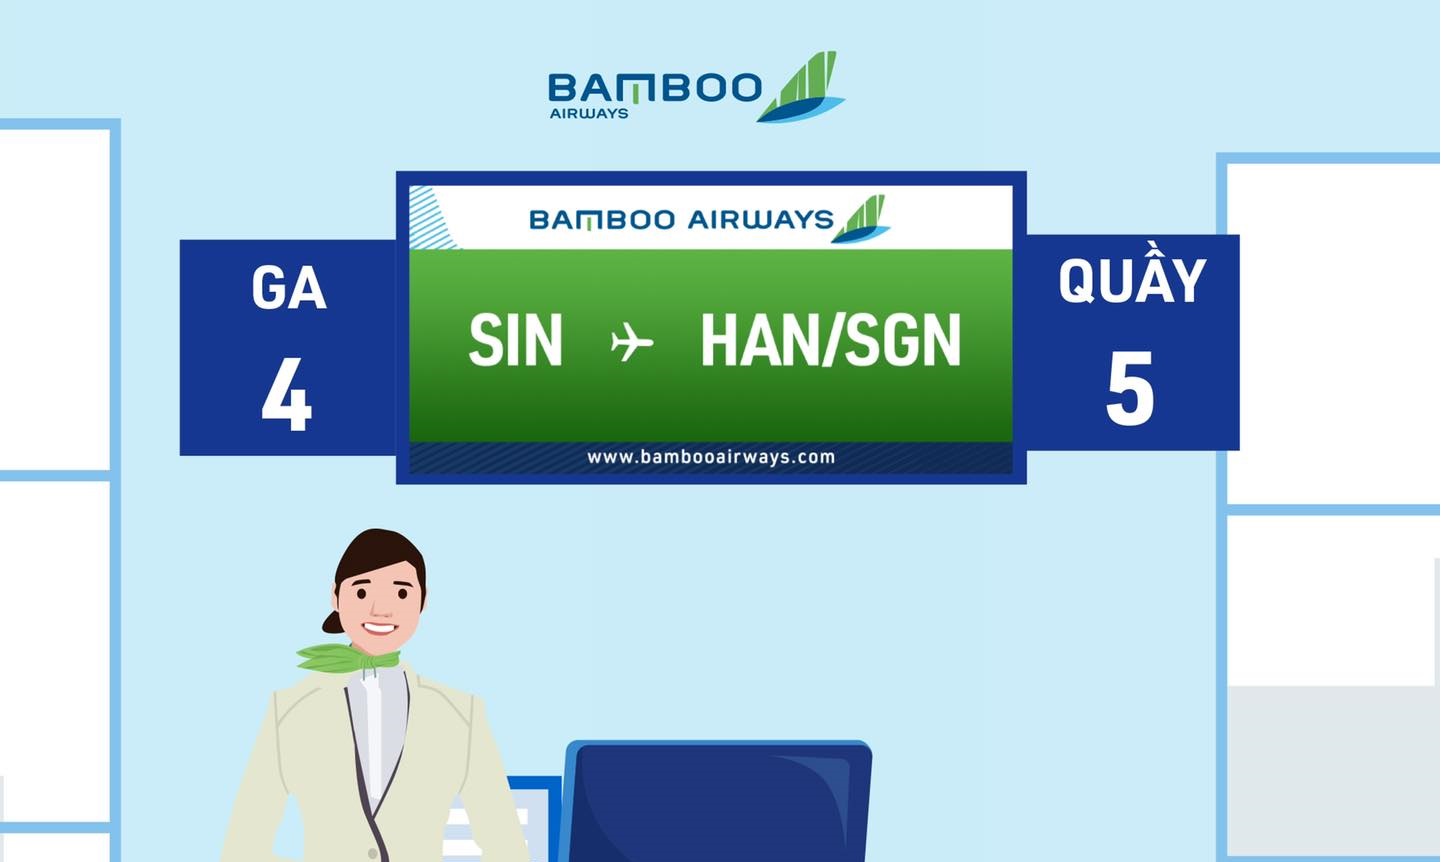 Thay đổi vị trí quầy check-in BAMBOO AIRWAYS tại sân bay CHANGI - SINGAPORE